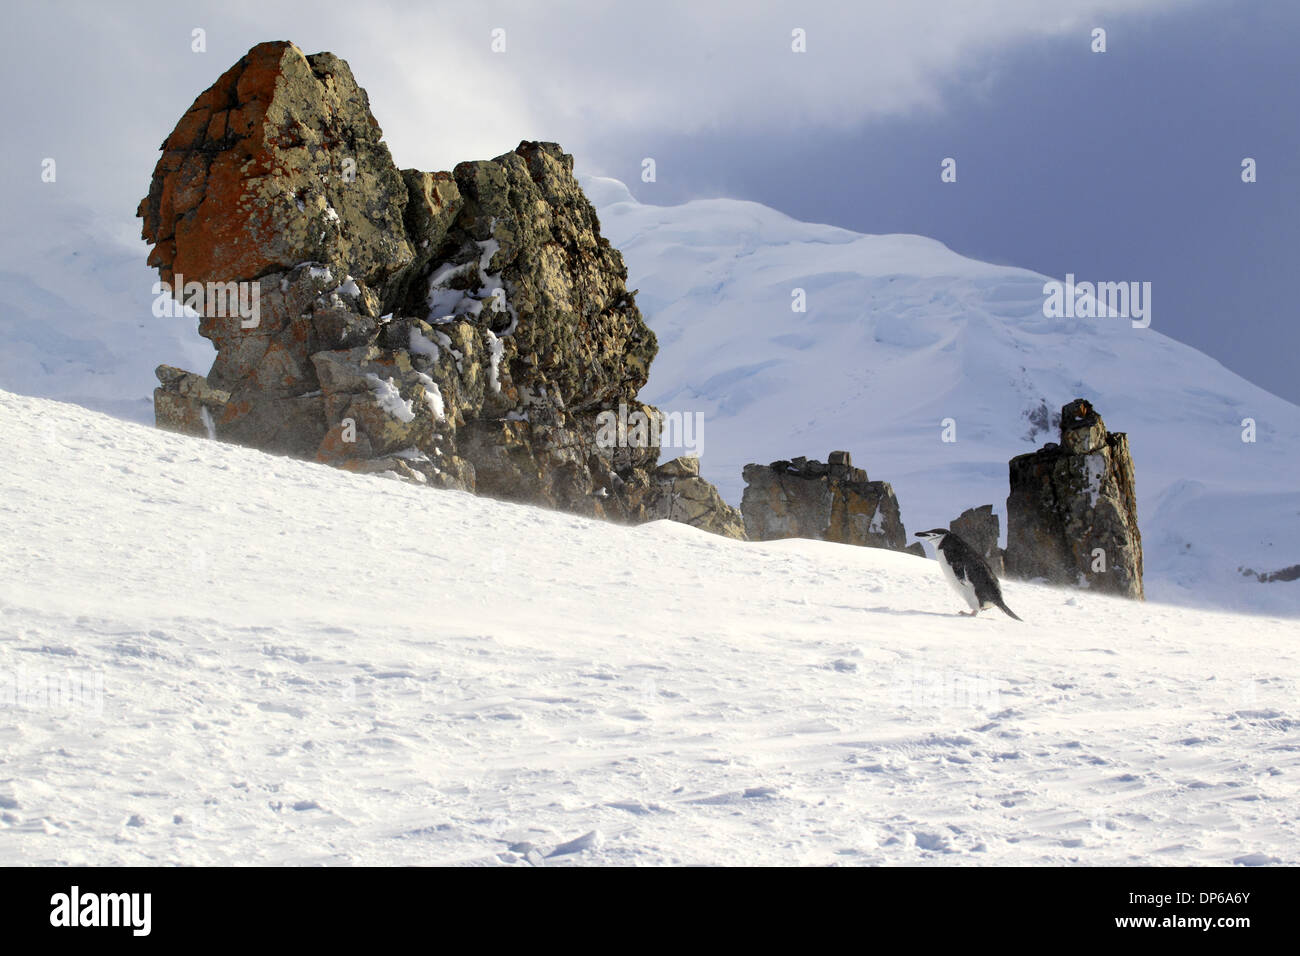 Manchot à Jugulaire (Pygoscelis antarctica) adulte marche sur la neige à côté de la pente éperon rocheux Brown Bluff Argentina Banque D'Images